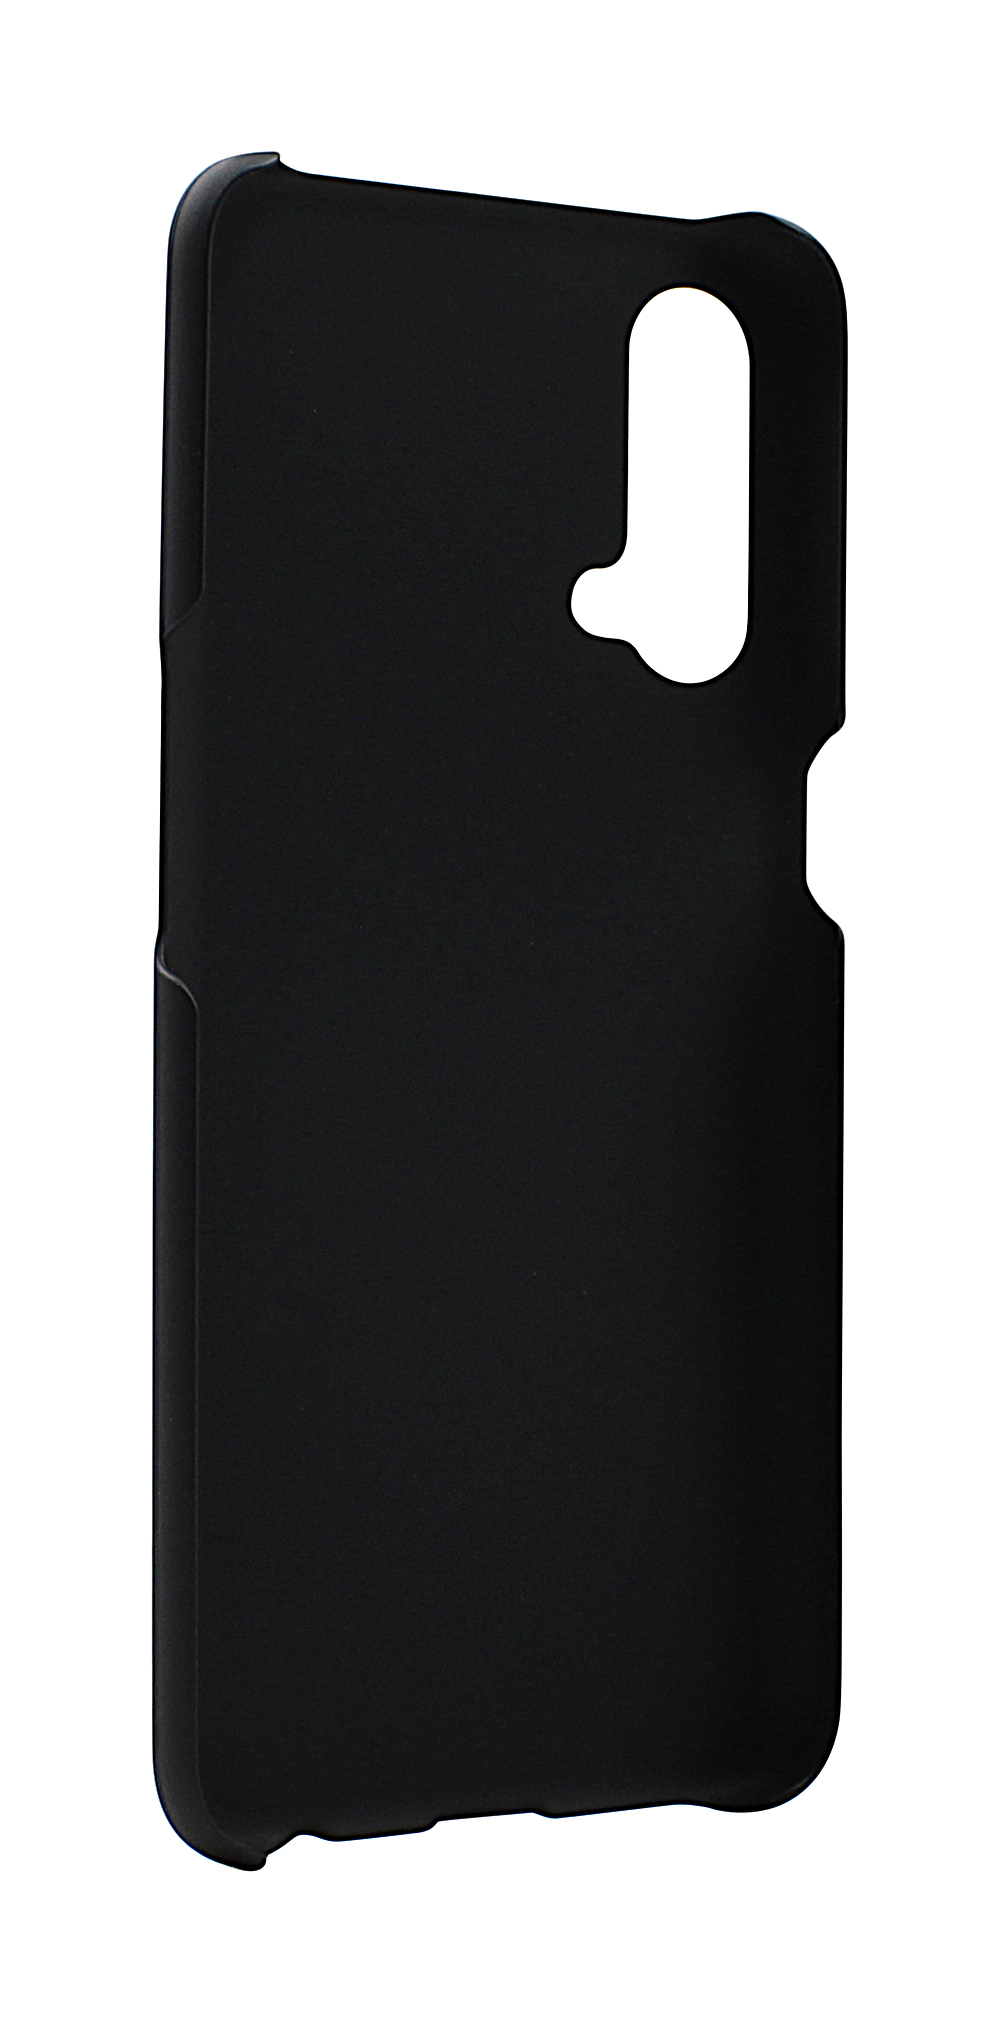 CoverInSkimblocker Magnet Designwallet OnePlus Nord CE 5G